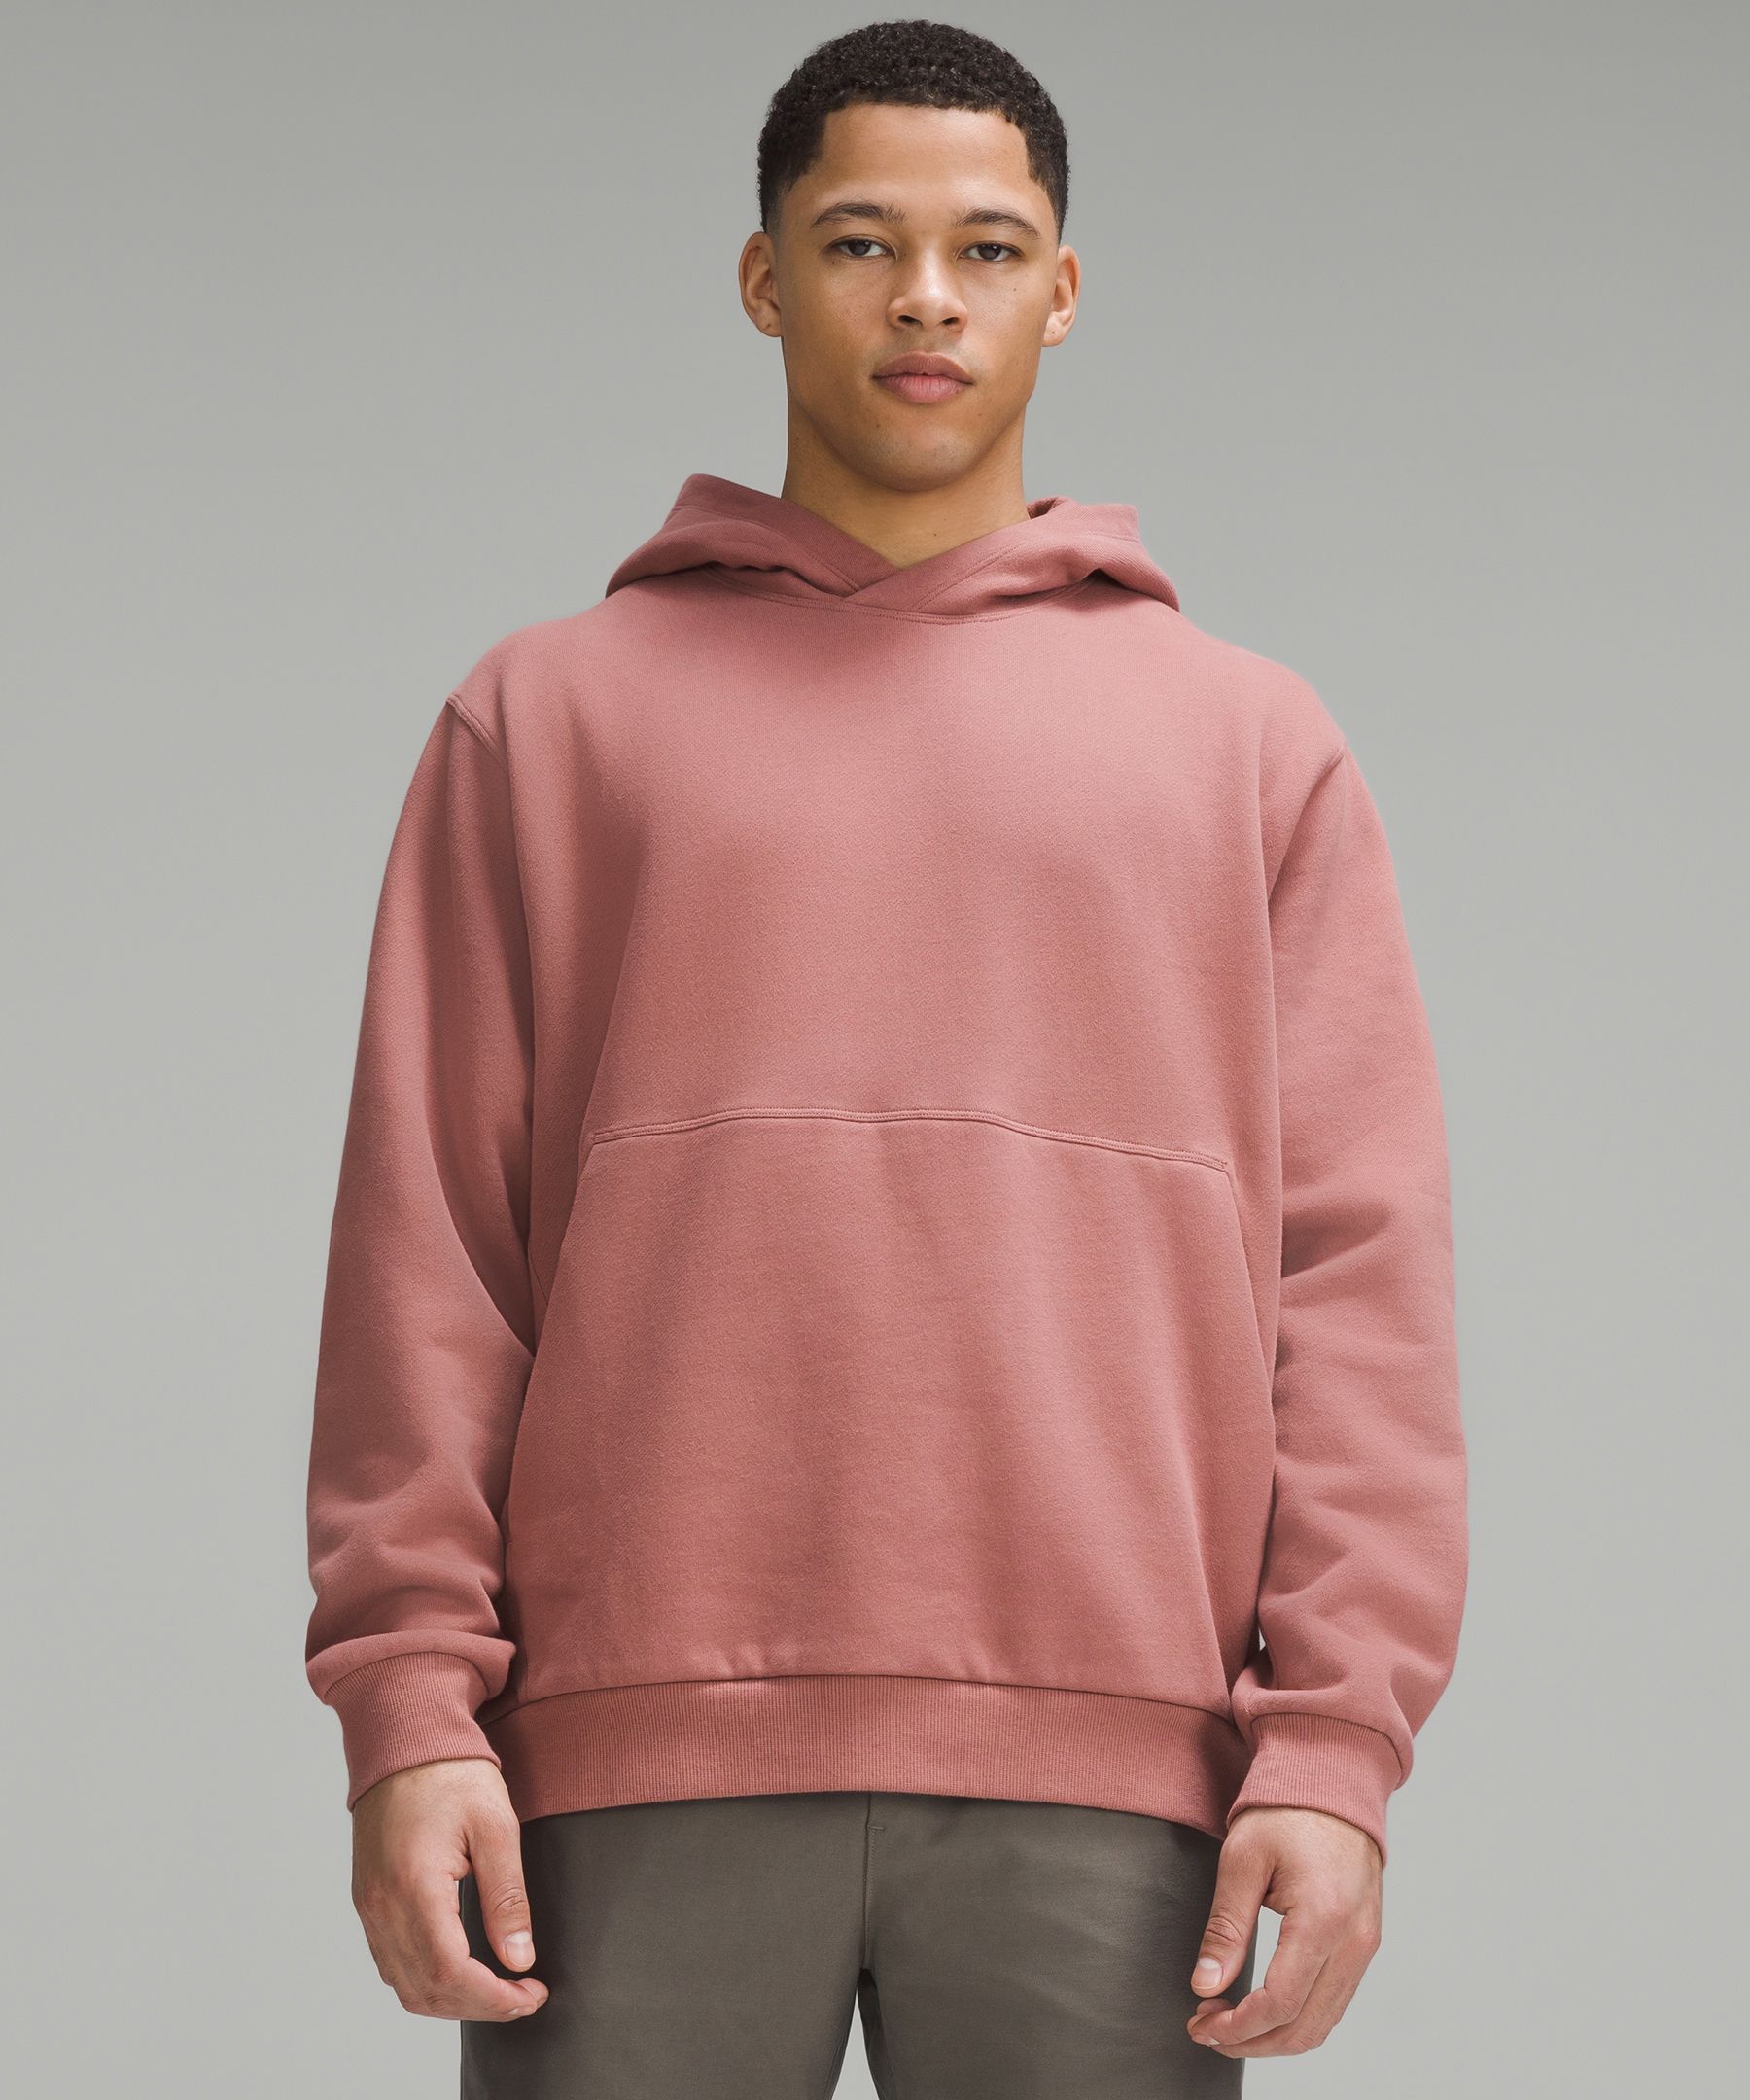 Men's Pink Hoodies & Sweatshirts